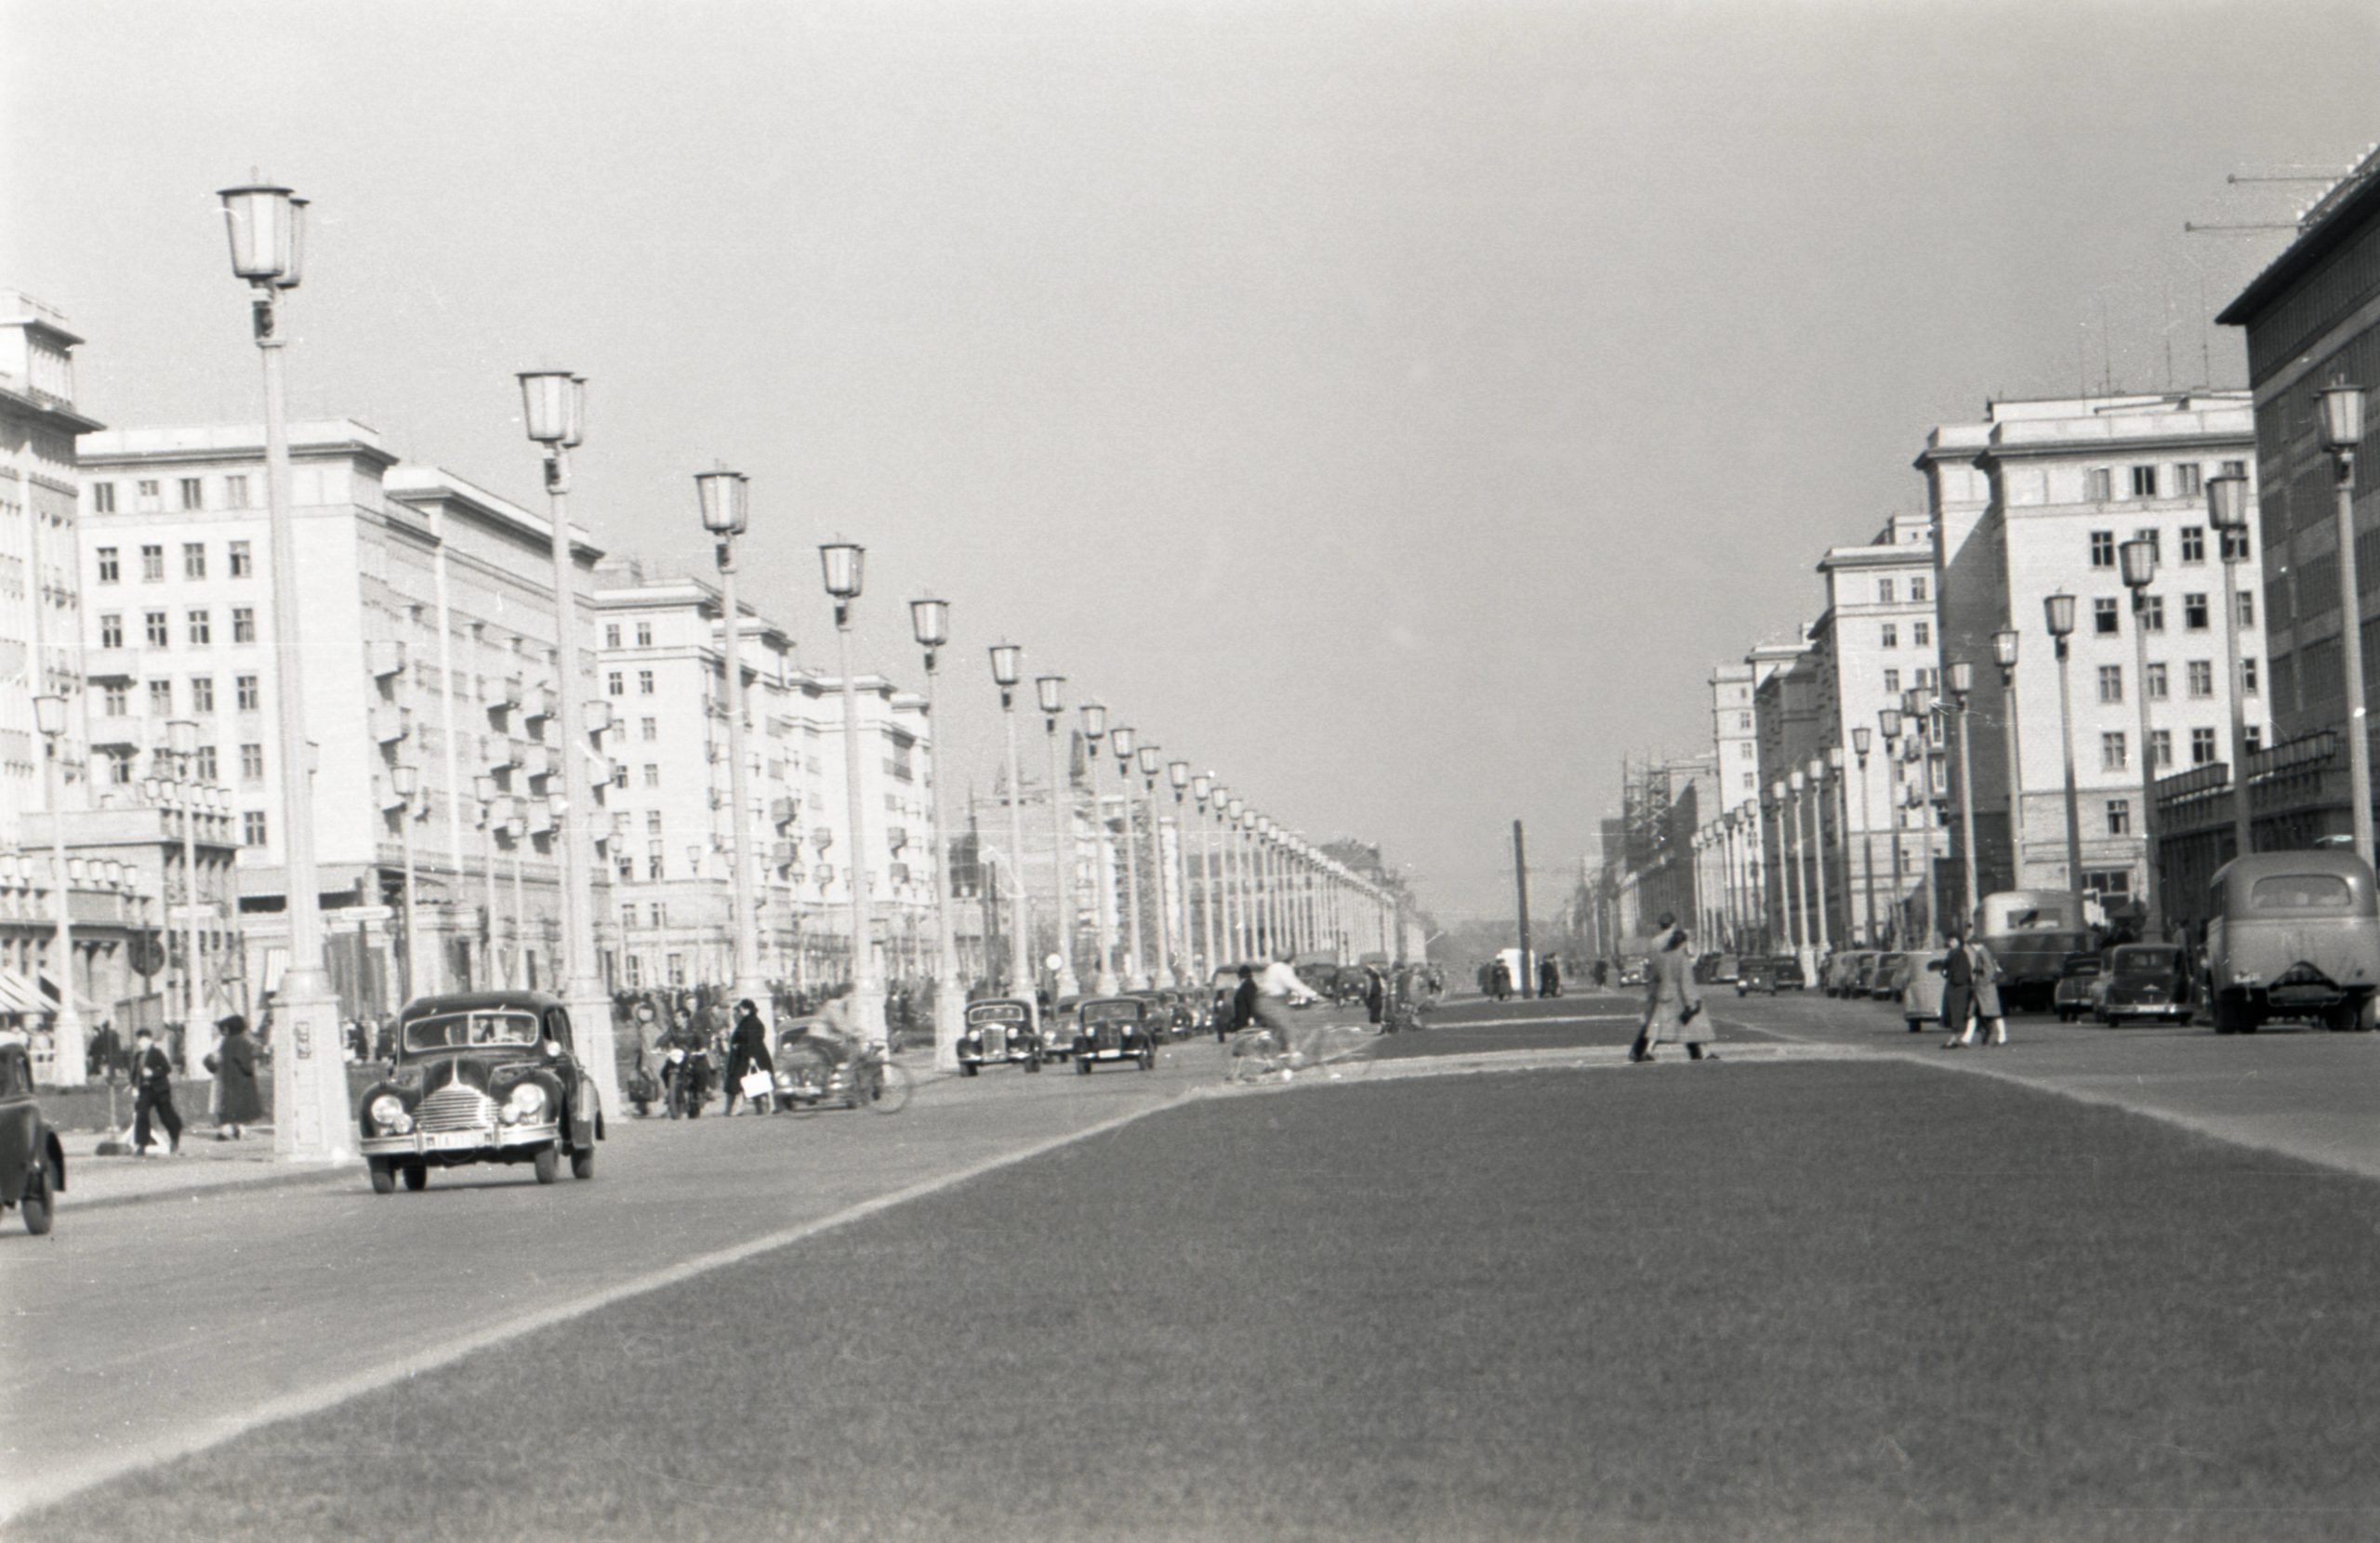 Das städtebauliche Vorzeigeprojekt in der Hauptstadt der DDR, die Karl-Marx-Allee, 1961. Foto: Imago/Serienlicht